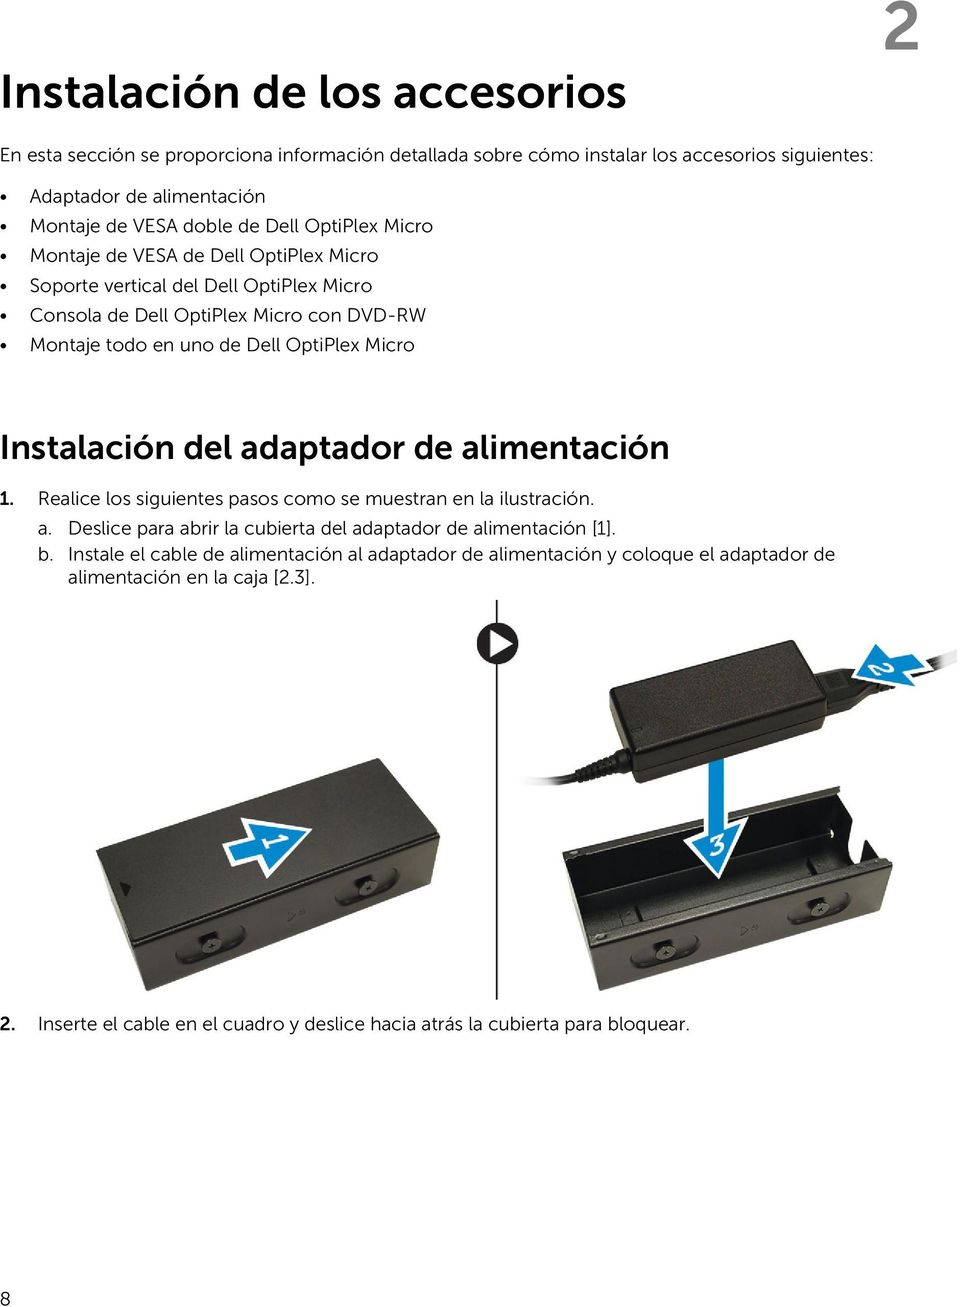 Instalación del adaptador de alimentación 1. Realice los siguientes pasos como se muestran en la ilustración. a. Deslice para abrir la cubierta del adaptador de alimentación [1]. b.